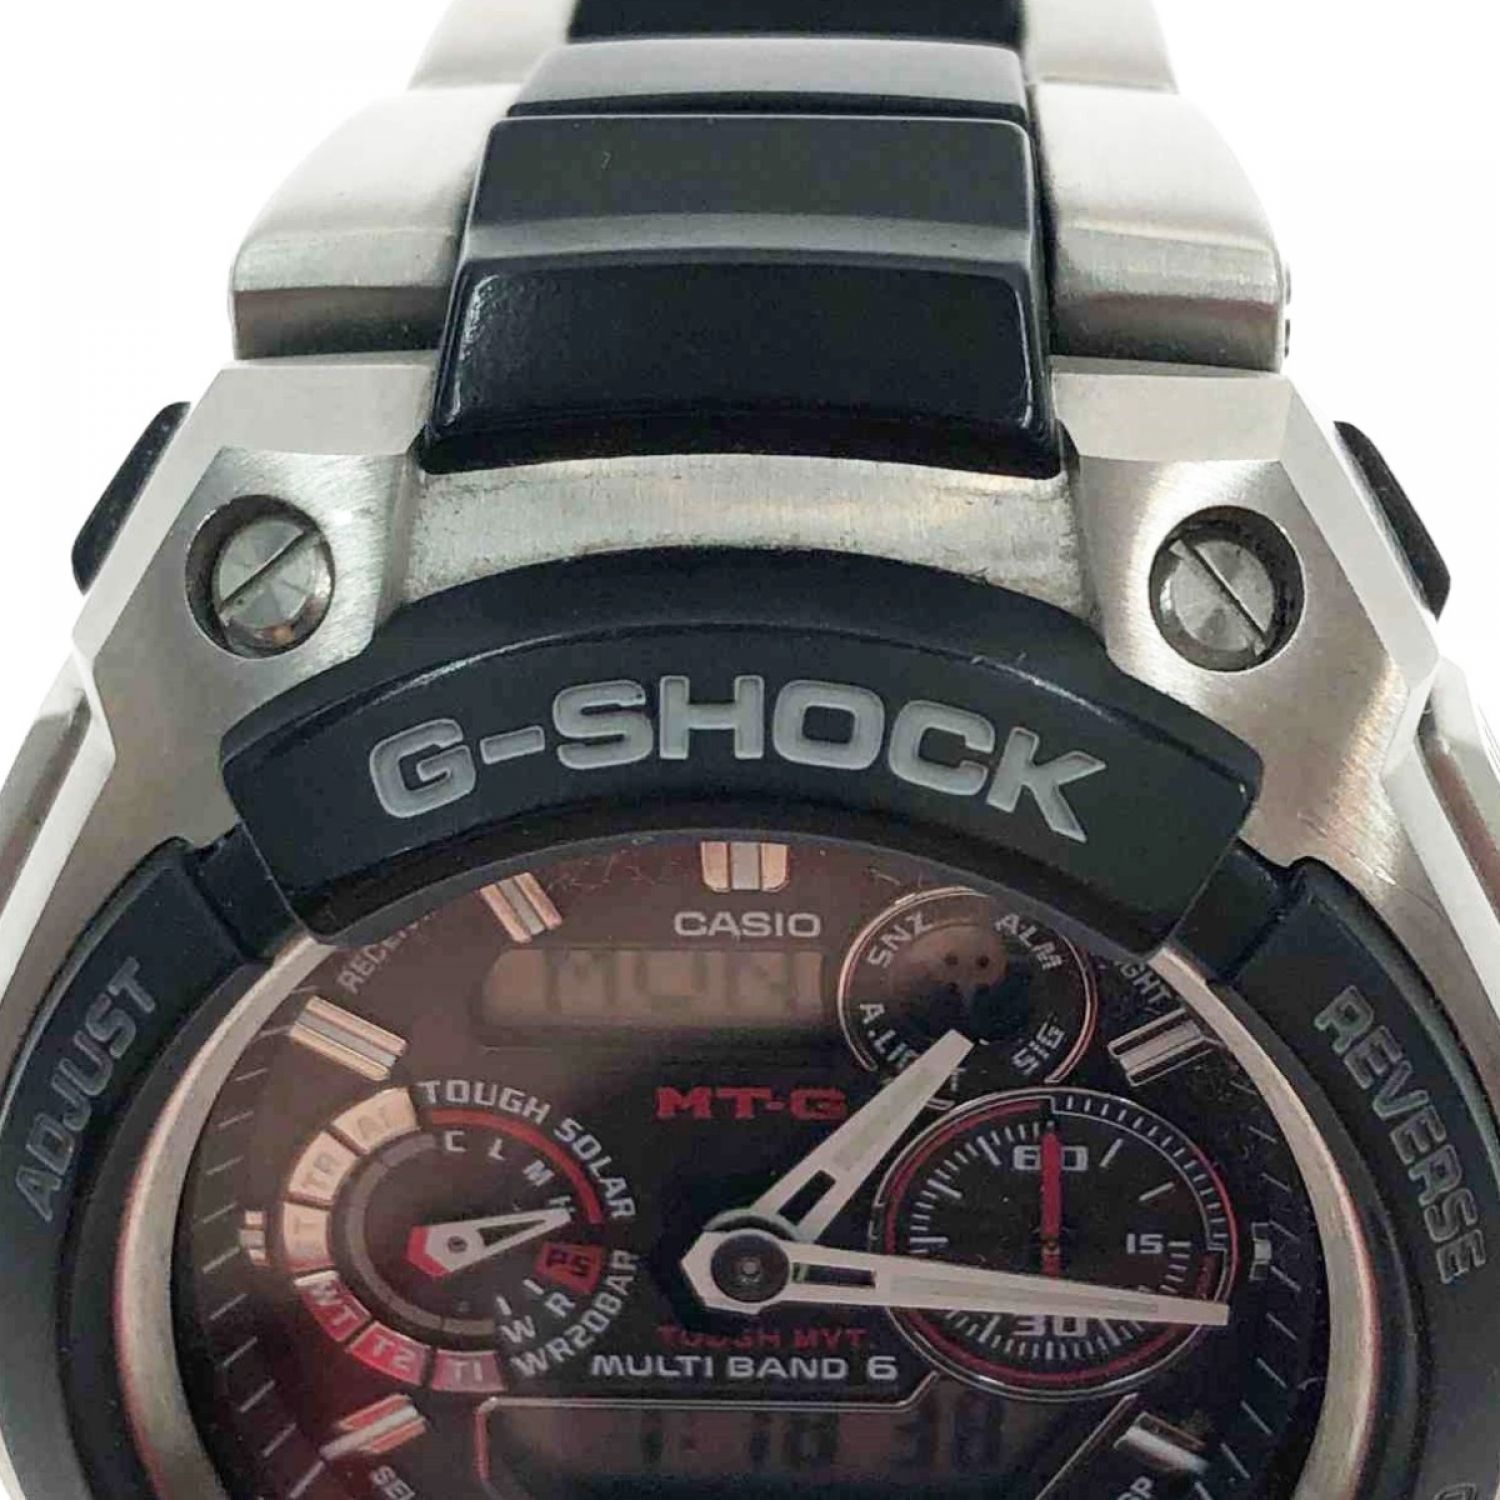 中古】 CASIO カシオ メンズ腕時計 G-SHOCK MTG-1500 ブラック x 